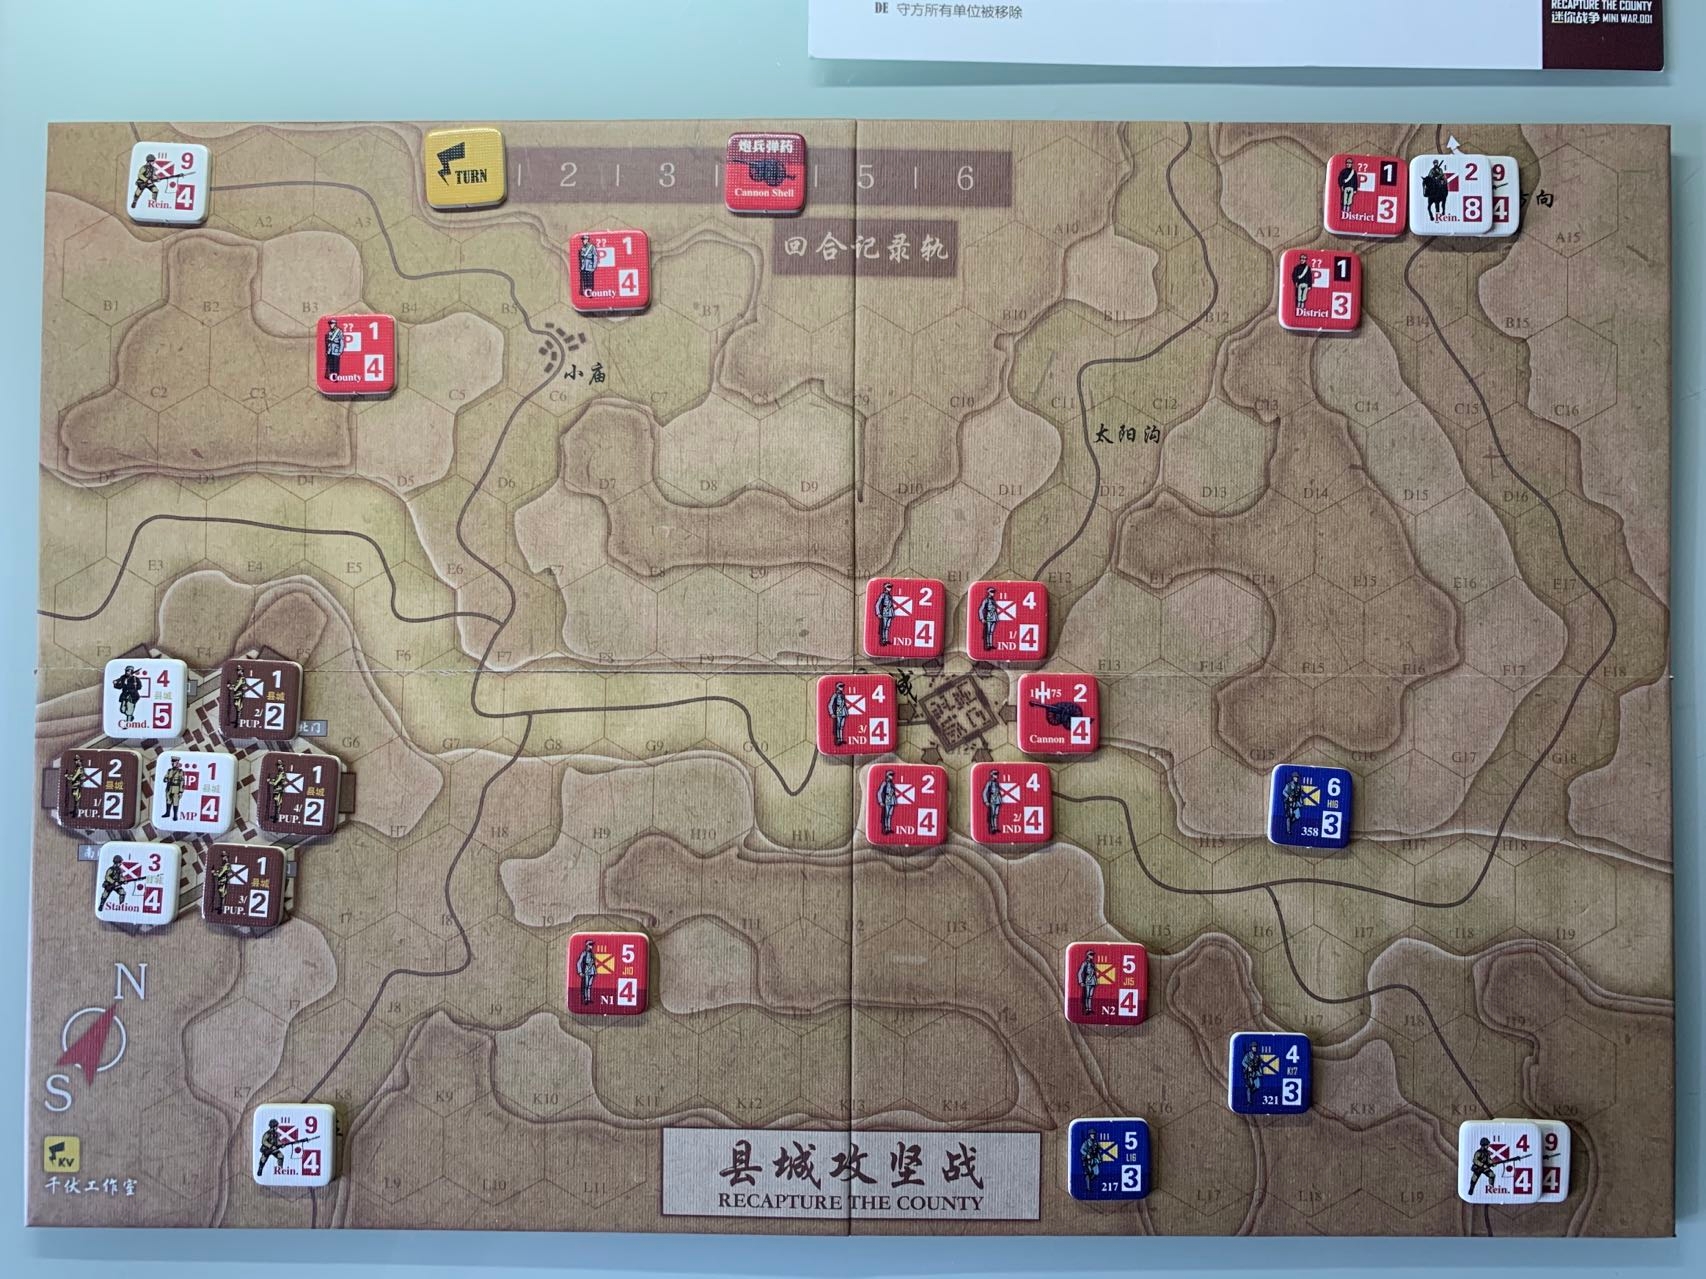 如圖，日方決定從縣城西南方與南方各僅派1支9-4（即9攻擊力、4移動力）的增援部隊，而在北部與東部佈置了增援主力，分別為2-8、9-4以及4-4、9-4。